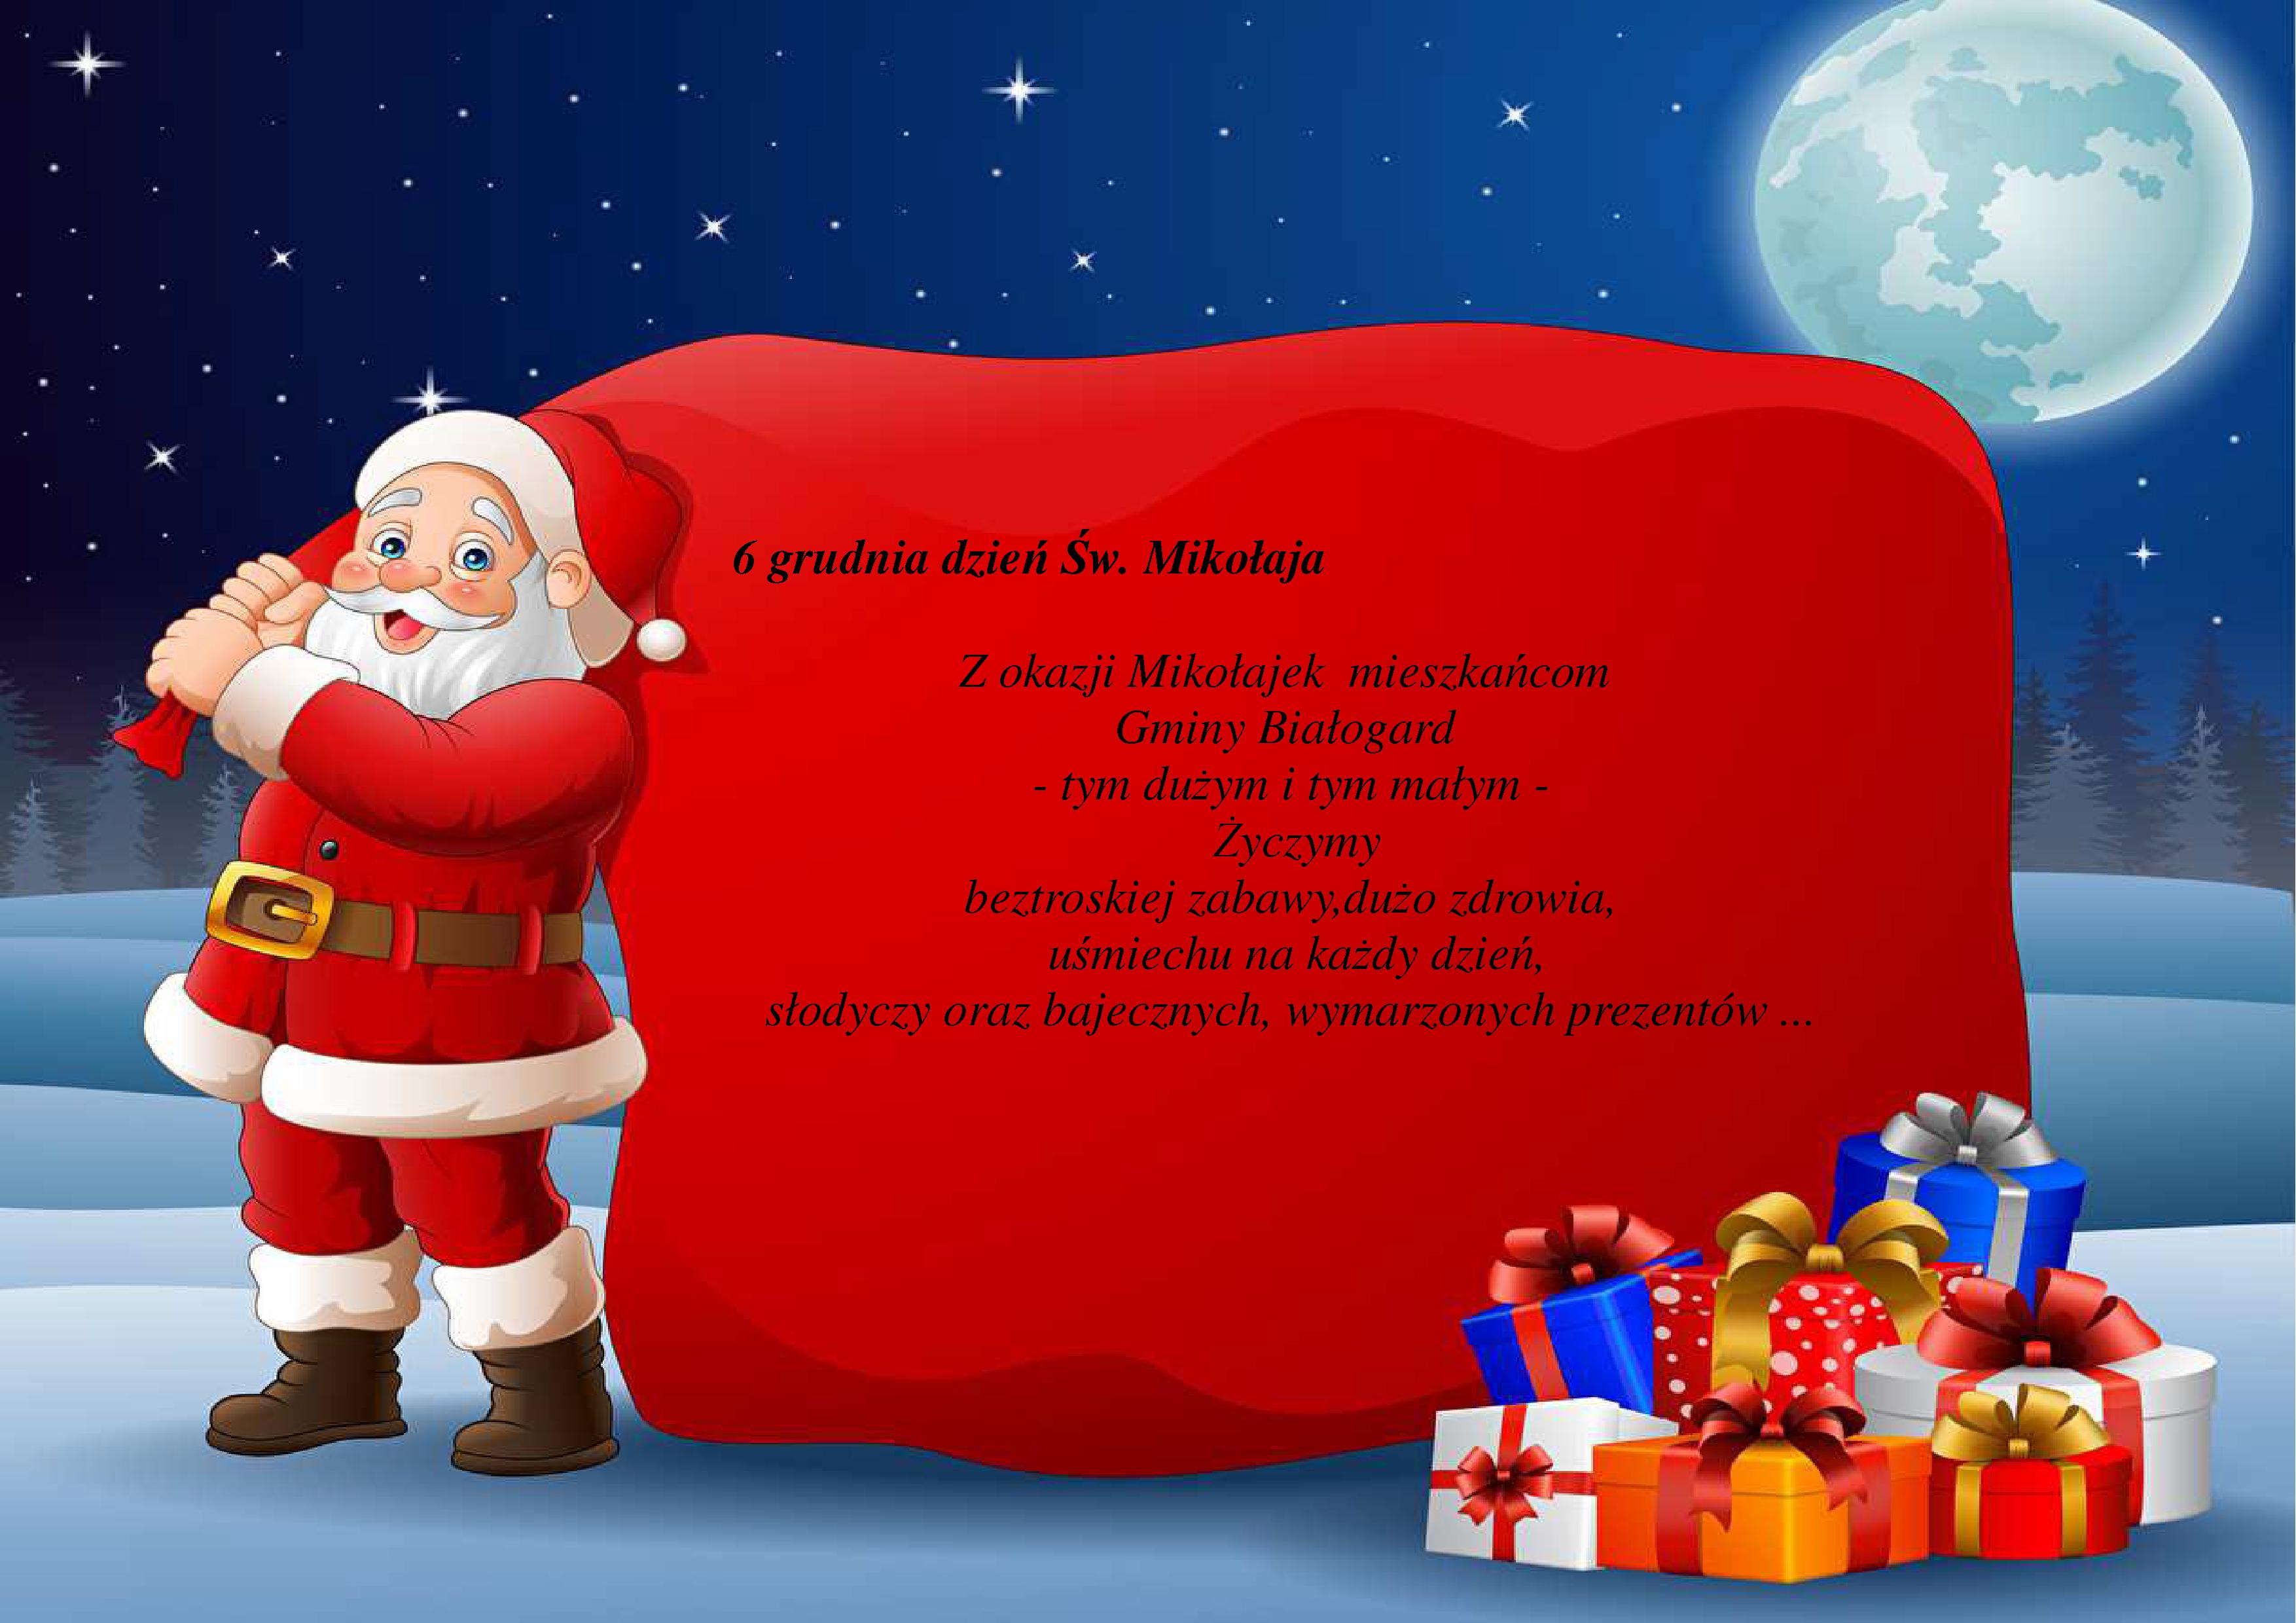 6 grudnia dzień Św. Mikołaja  6 grudnia dzień Św. Mikołaja Z okazji Mikołajek mieszkańcom Gminy Białogard - tym dużym i tym małym -Życzymy beztroskiej zabawy,dużo zdrowia, uśmiechu na każdy dzień, słodyczy oraz bajecznych, wymarzonych prezentów 